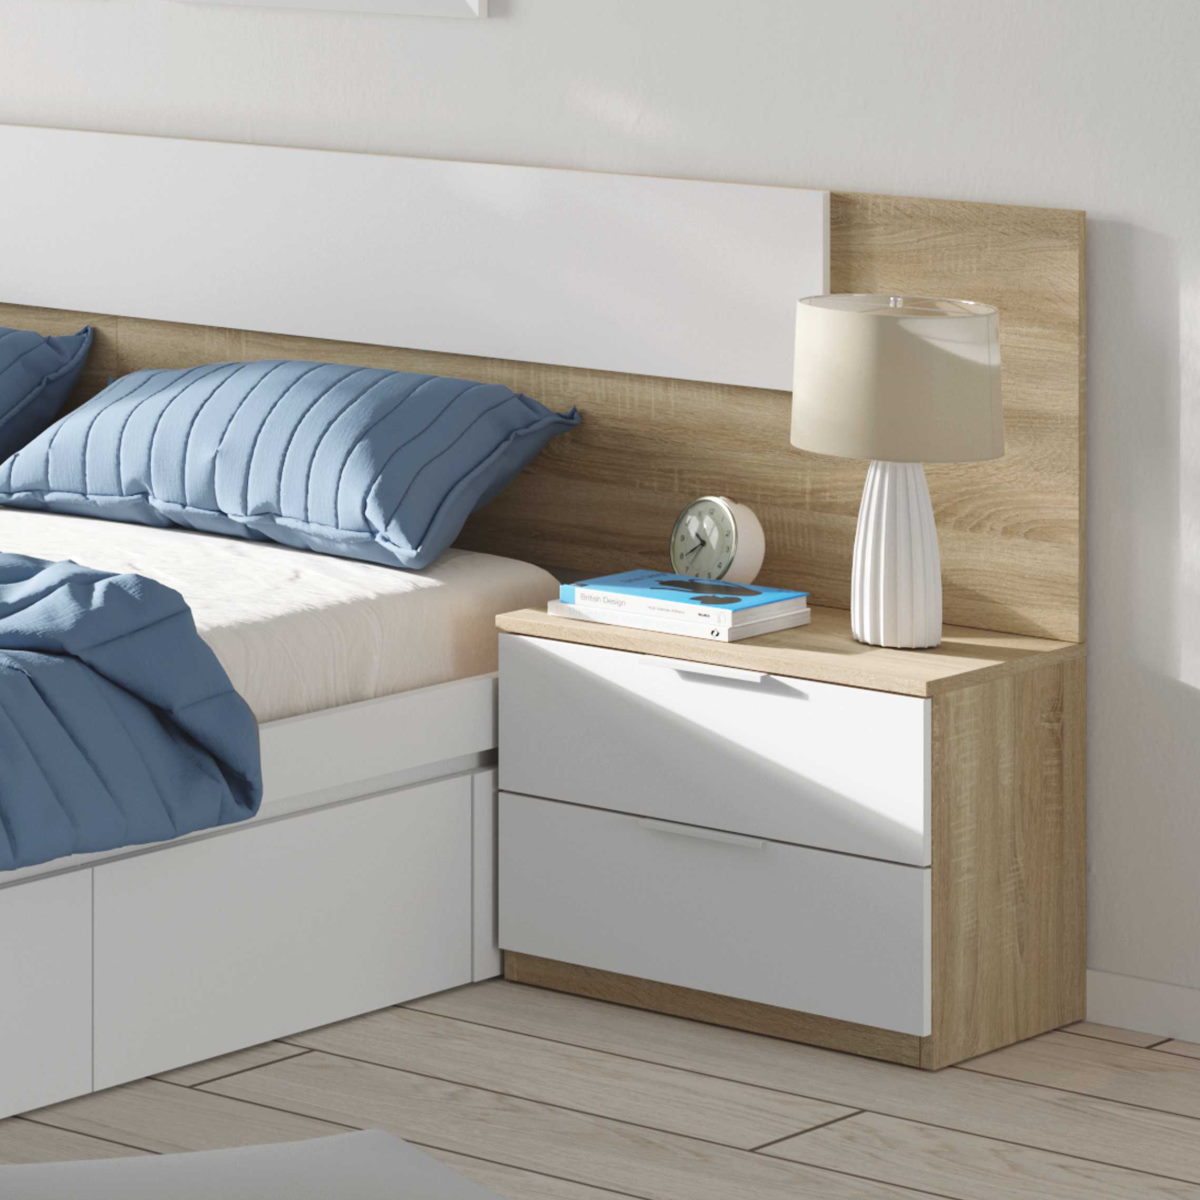 12 Mesitas de noche de estilo moderno para tu dormitorio